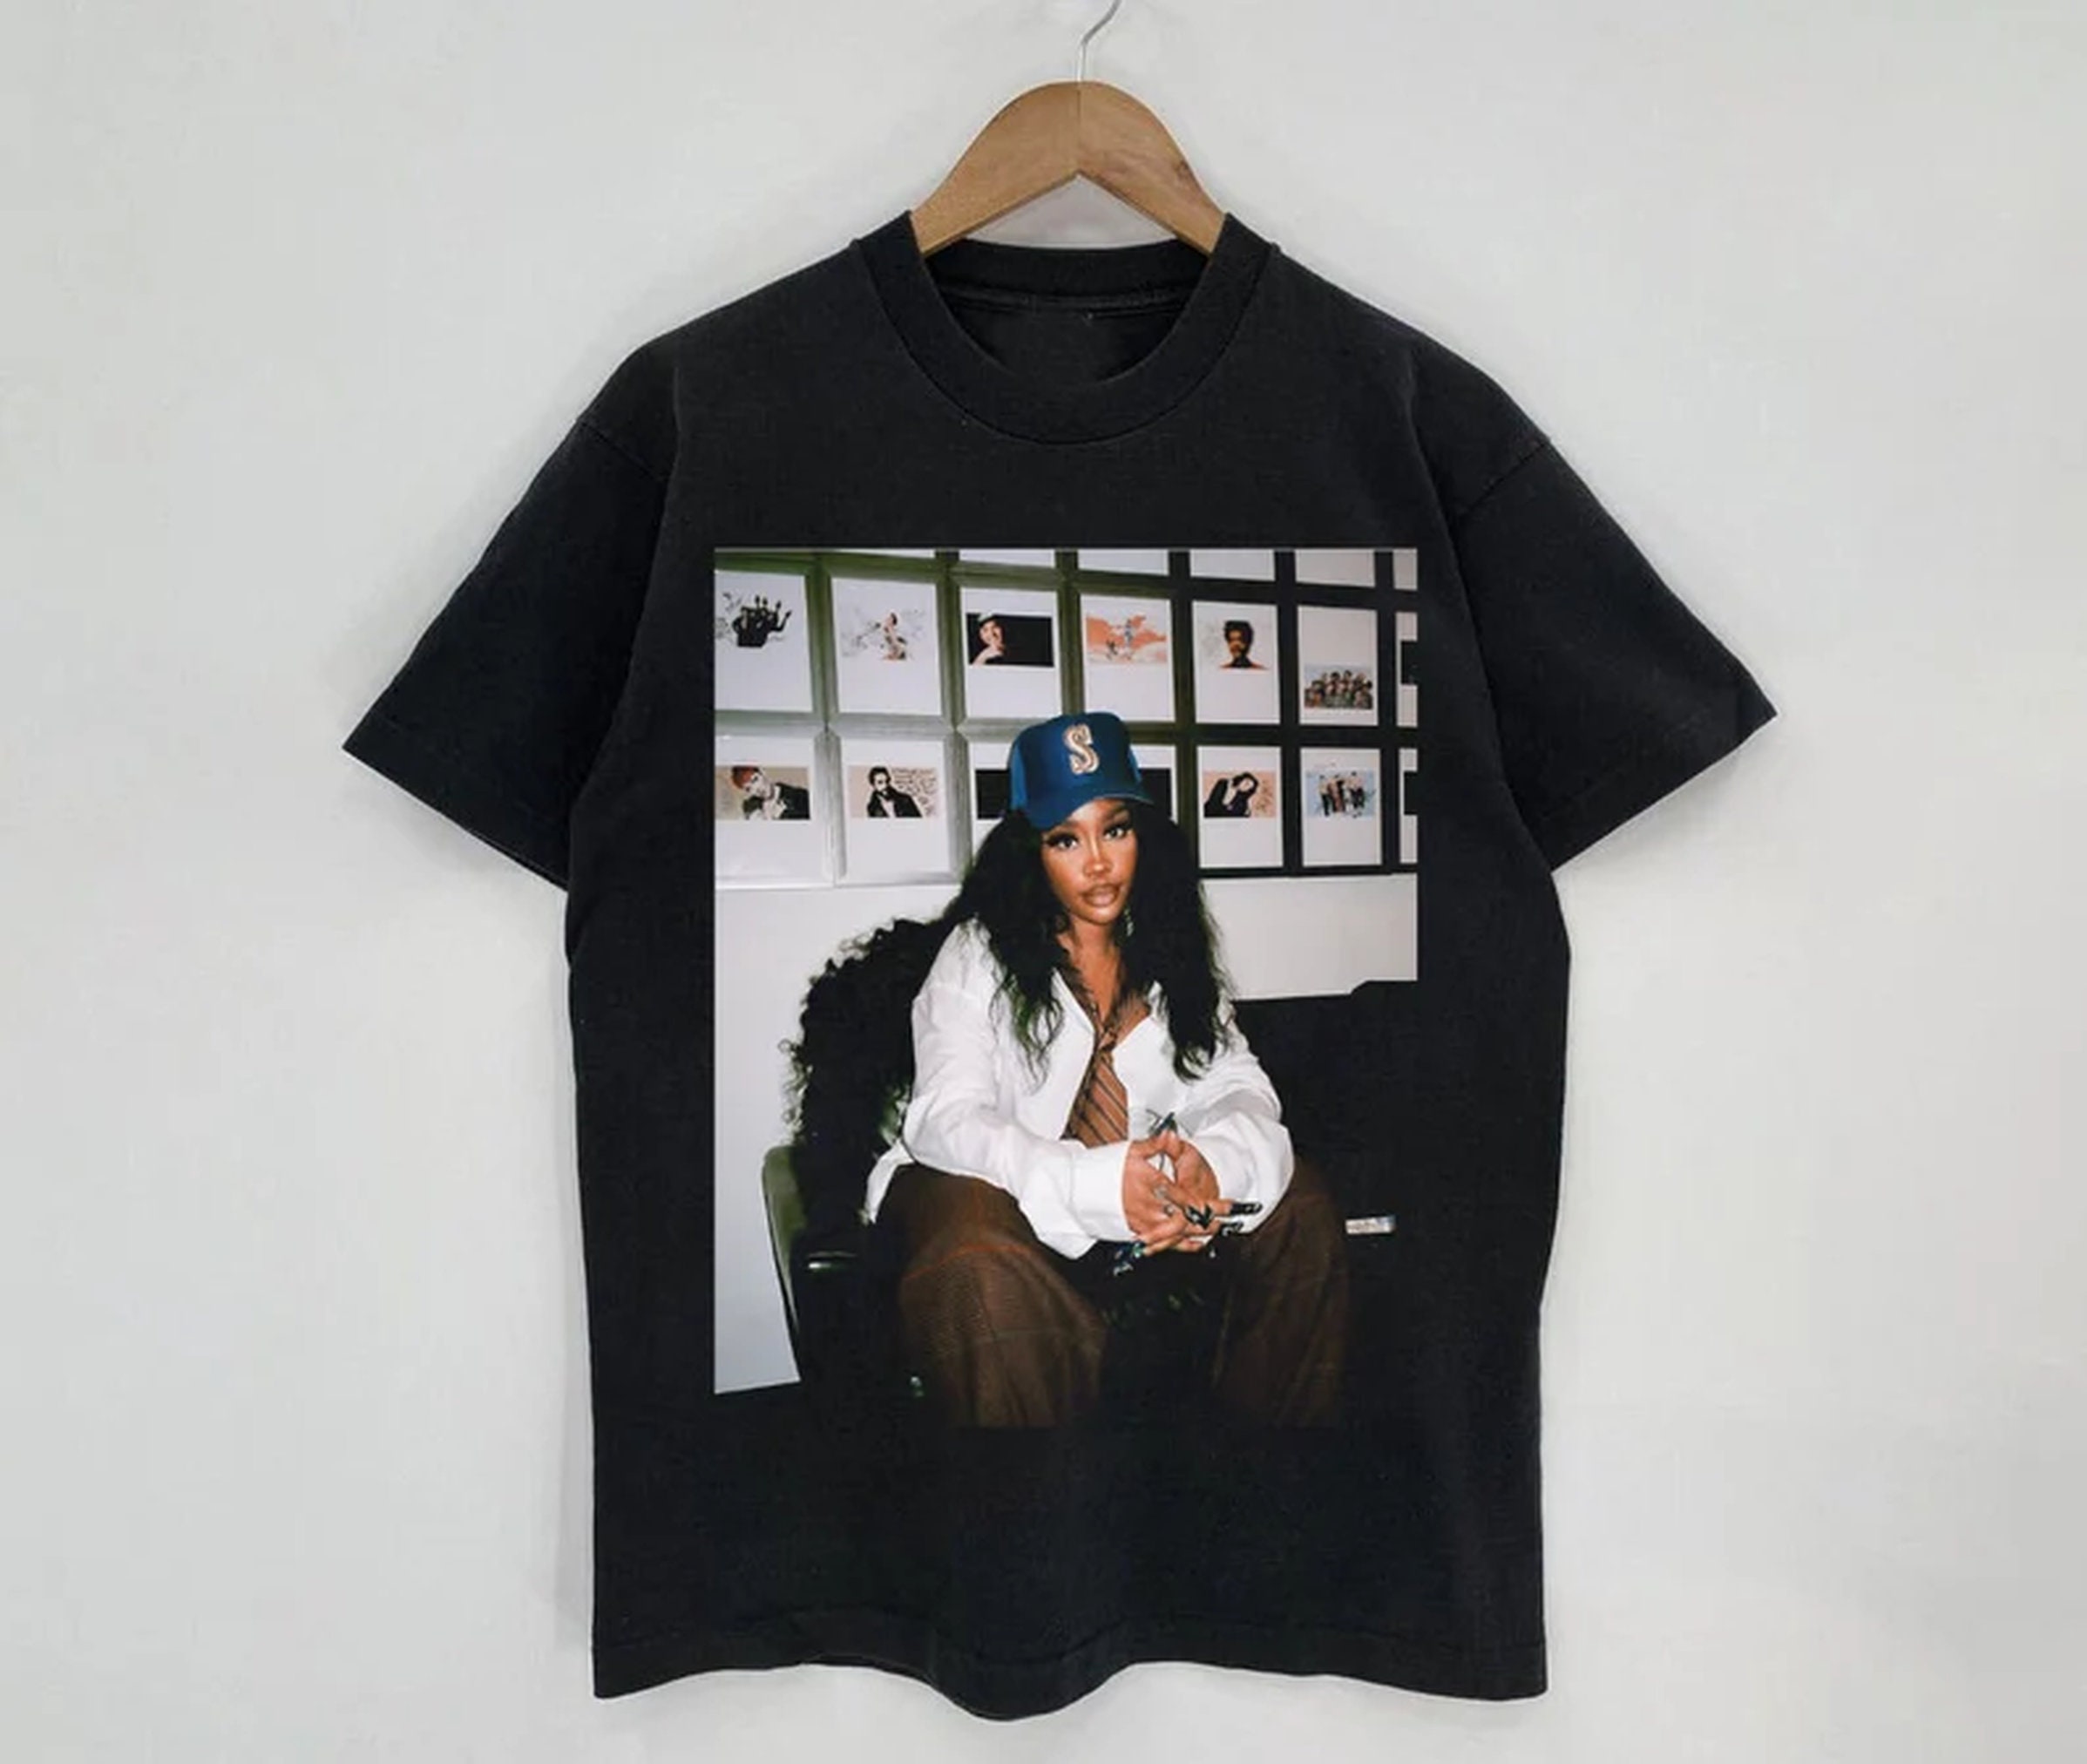 Discover Sza Vintage Shirt, Sza New Bootleg 90s Black T-Shirt, Sza Photoshoot Shirt